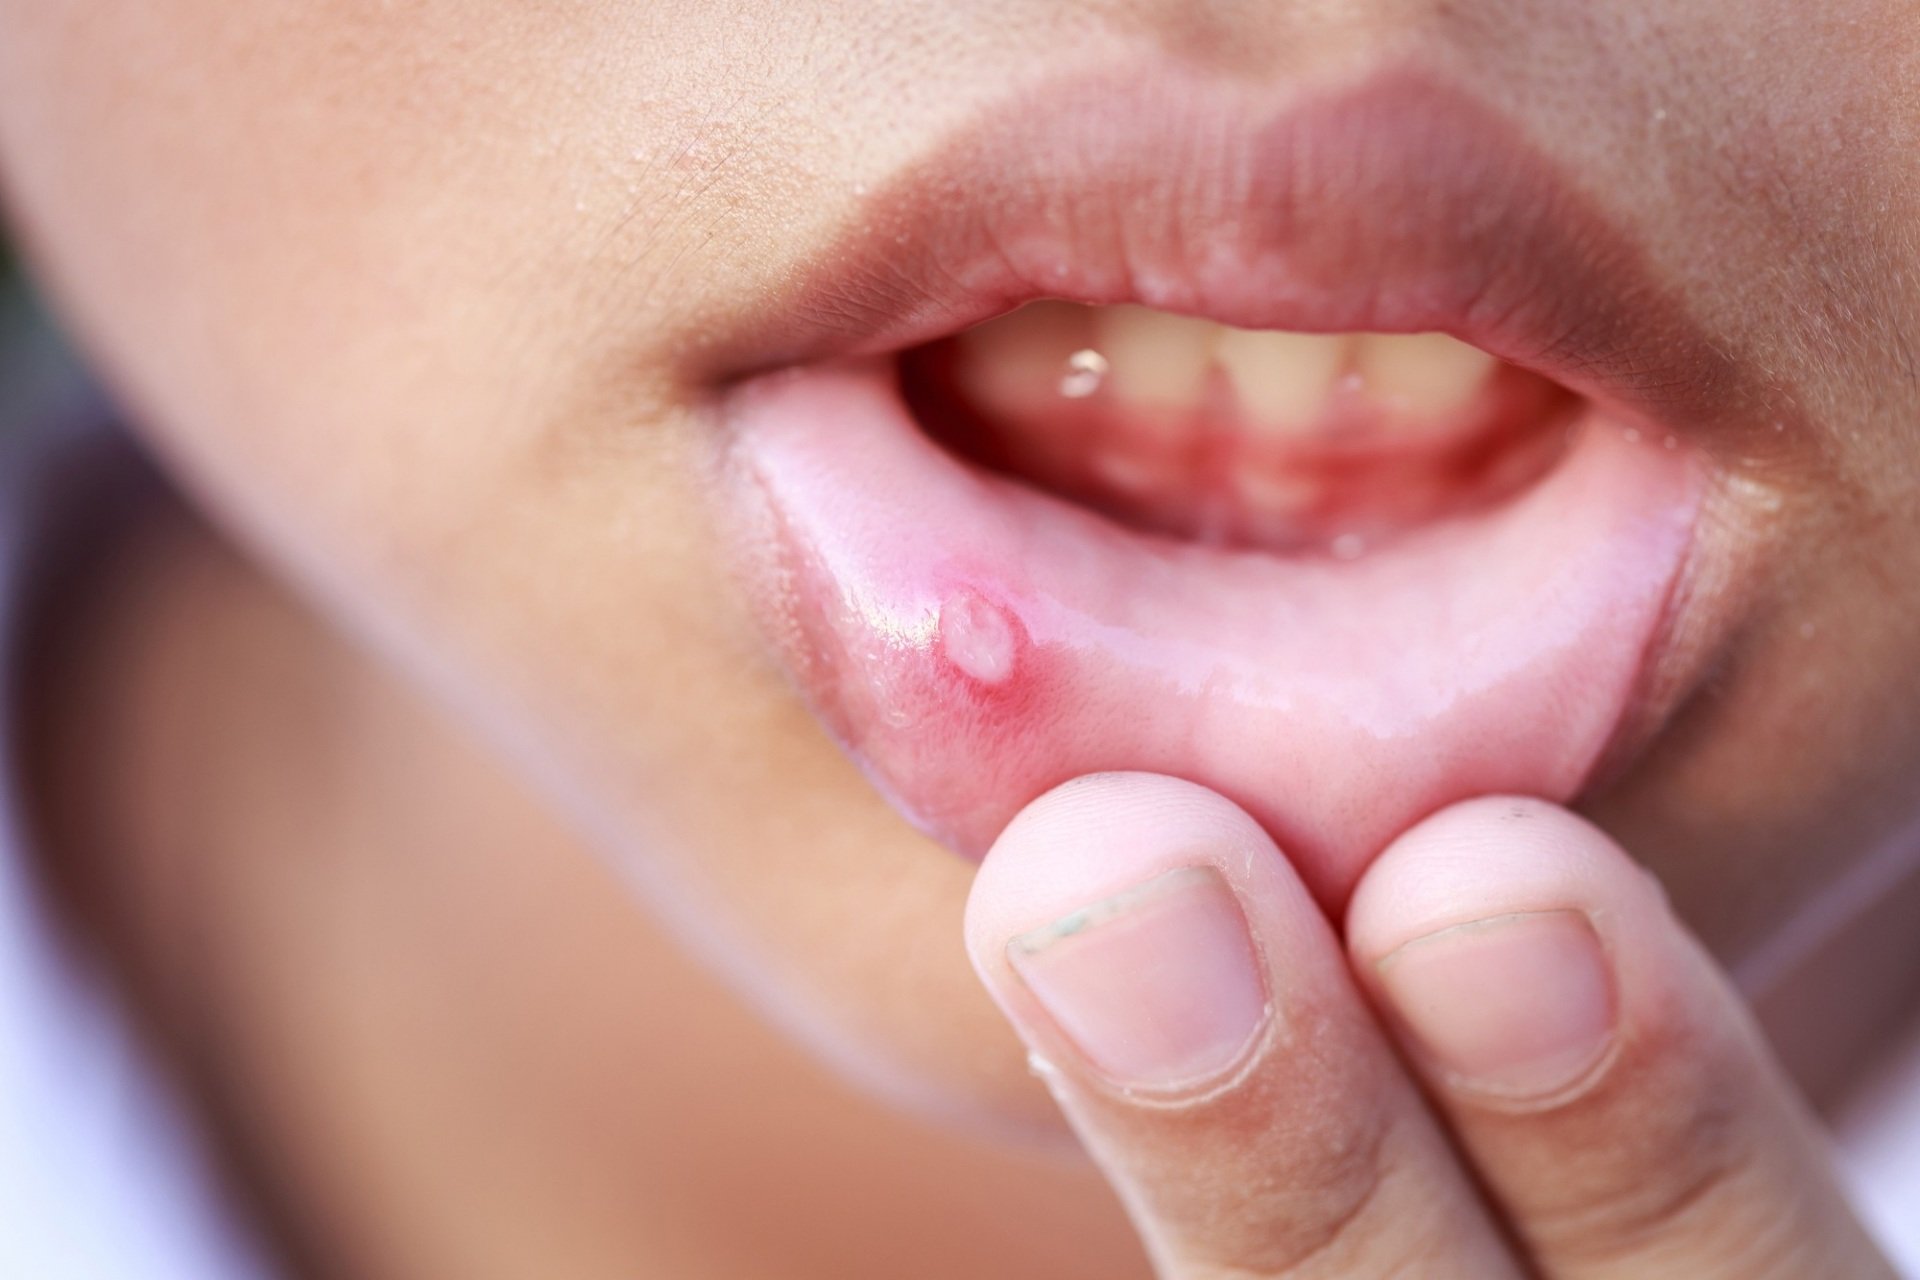   Đau loét miệng kéo dài có thể là triệu chứng ung thư miệng  